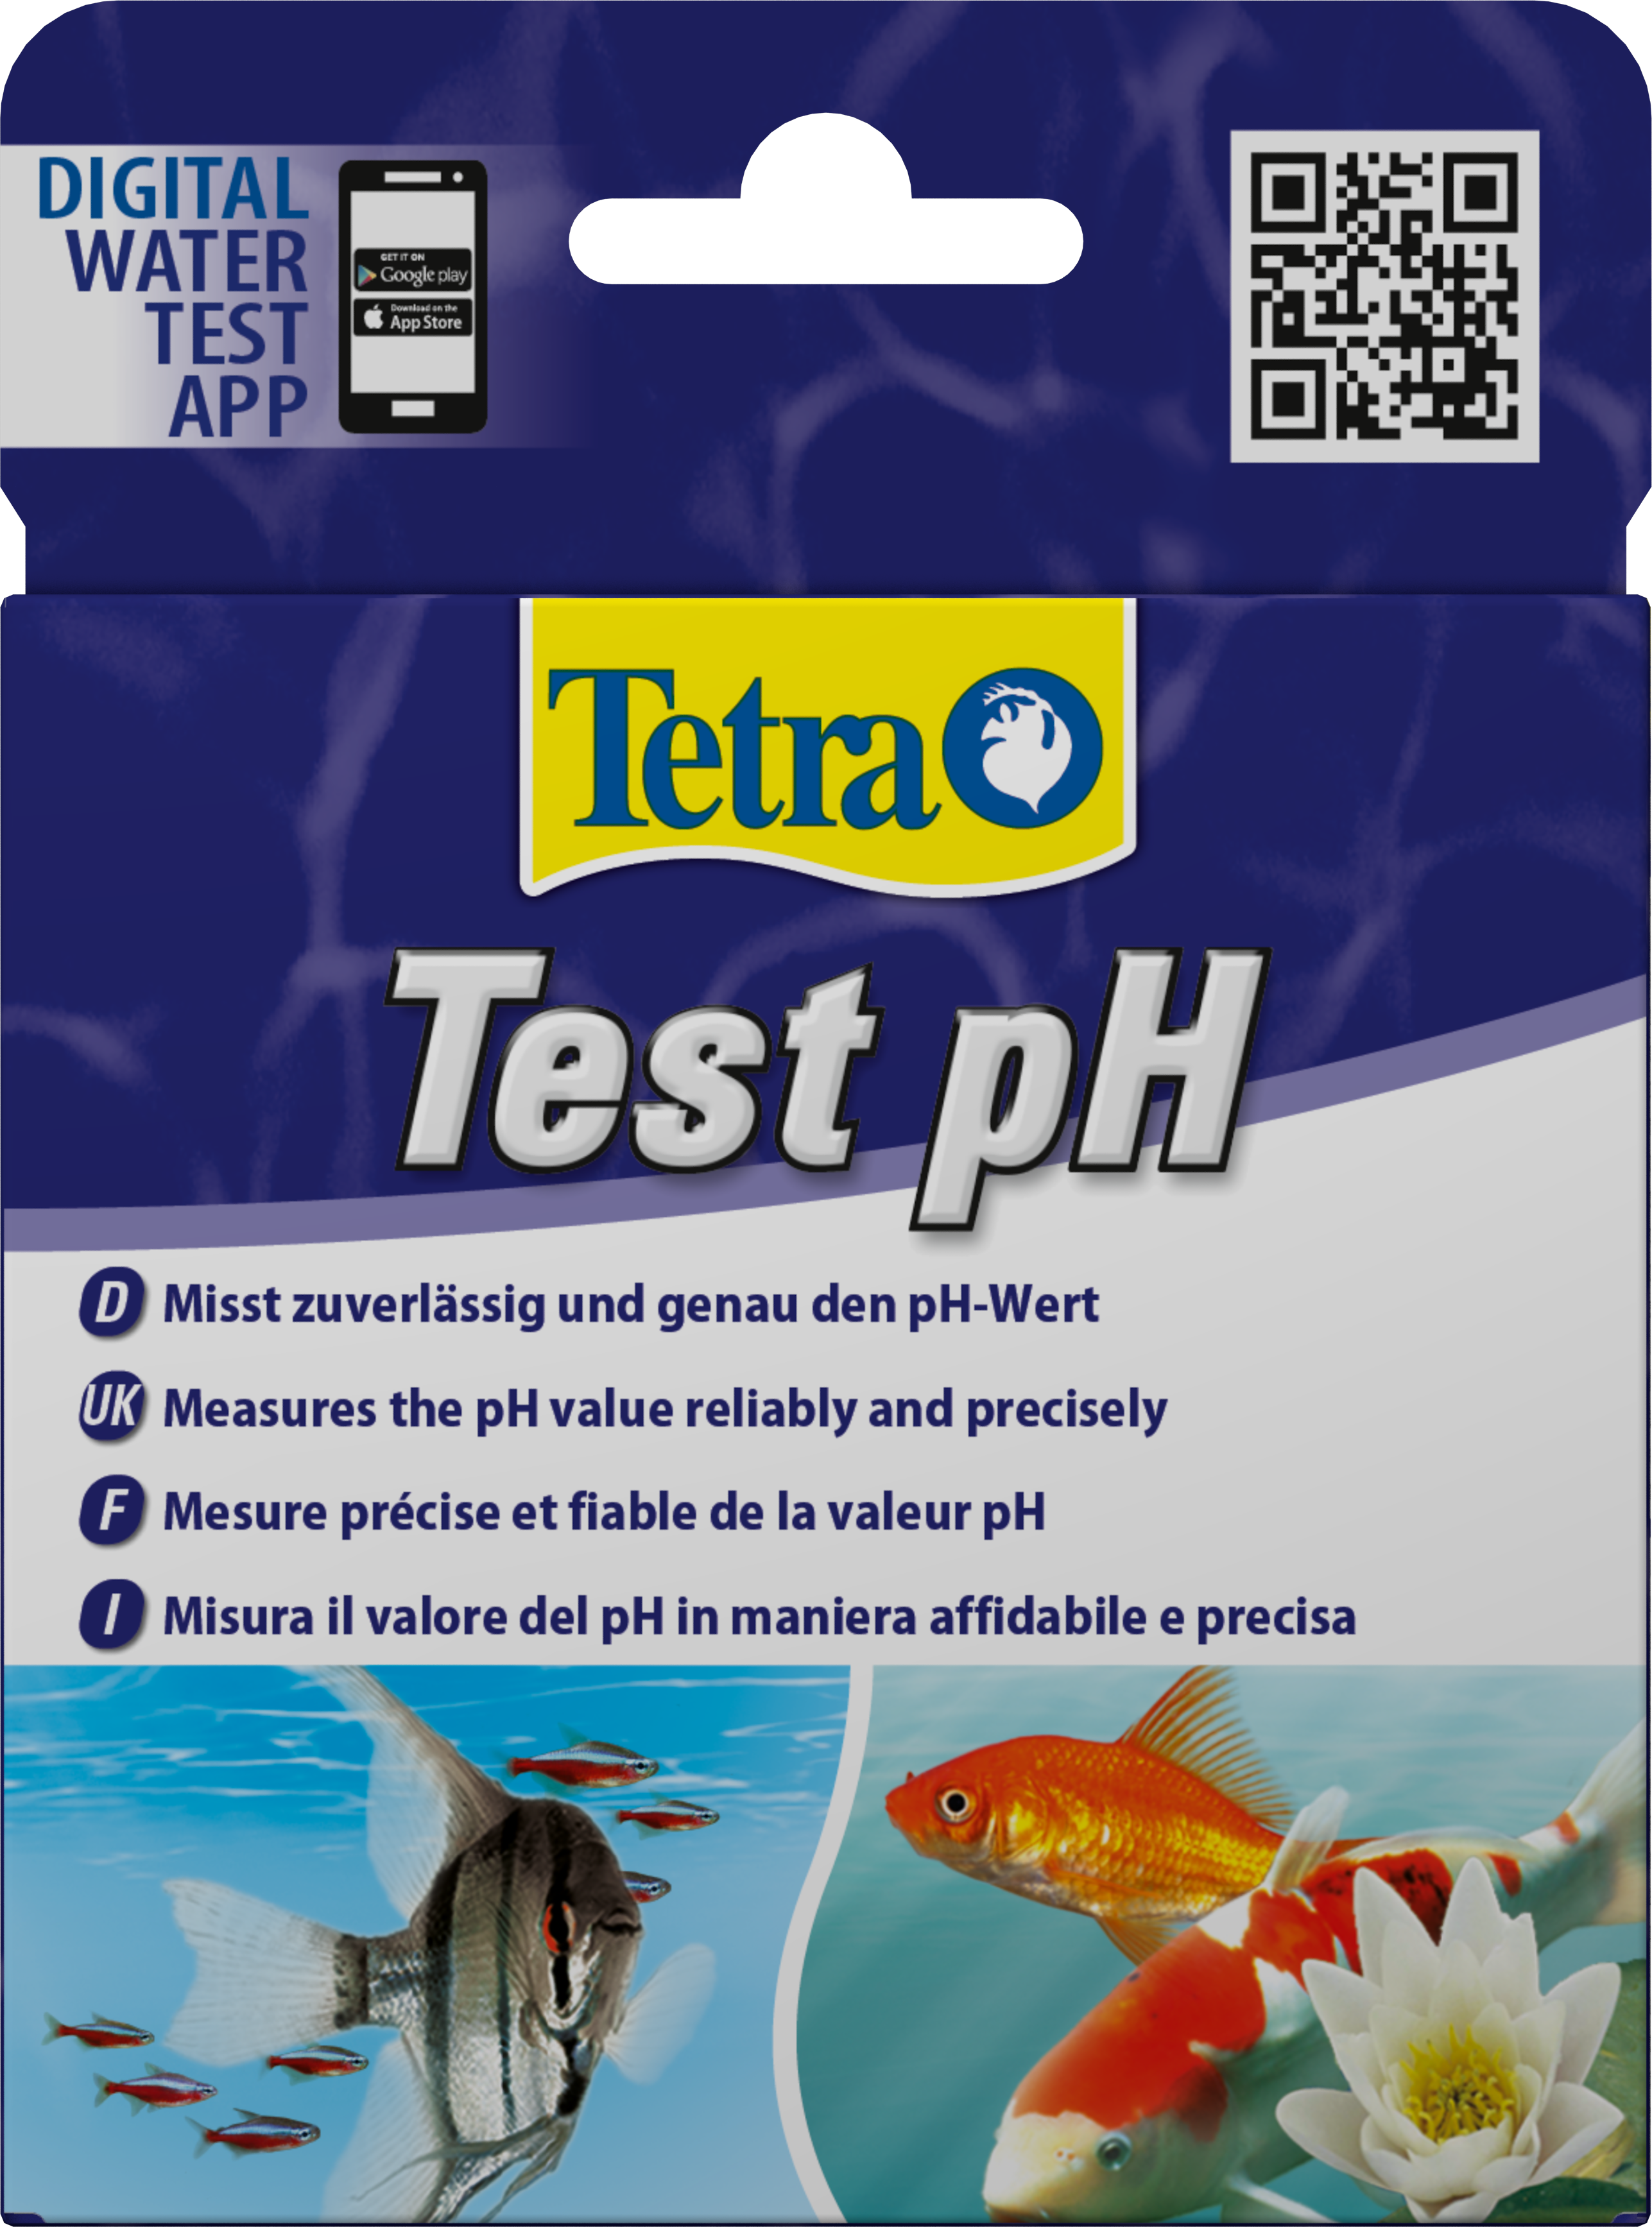 Tetra Test pH eau douce